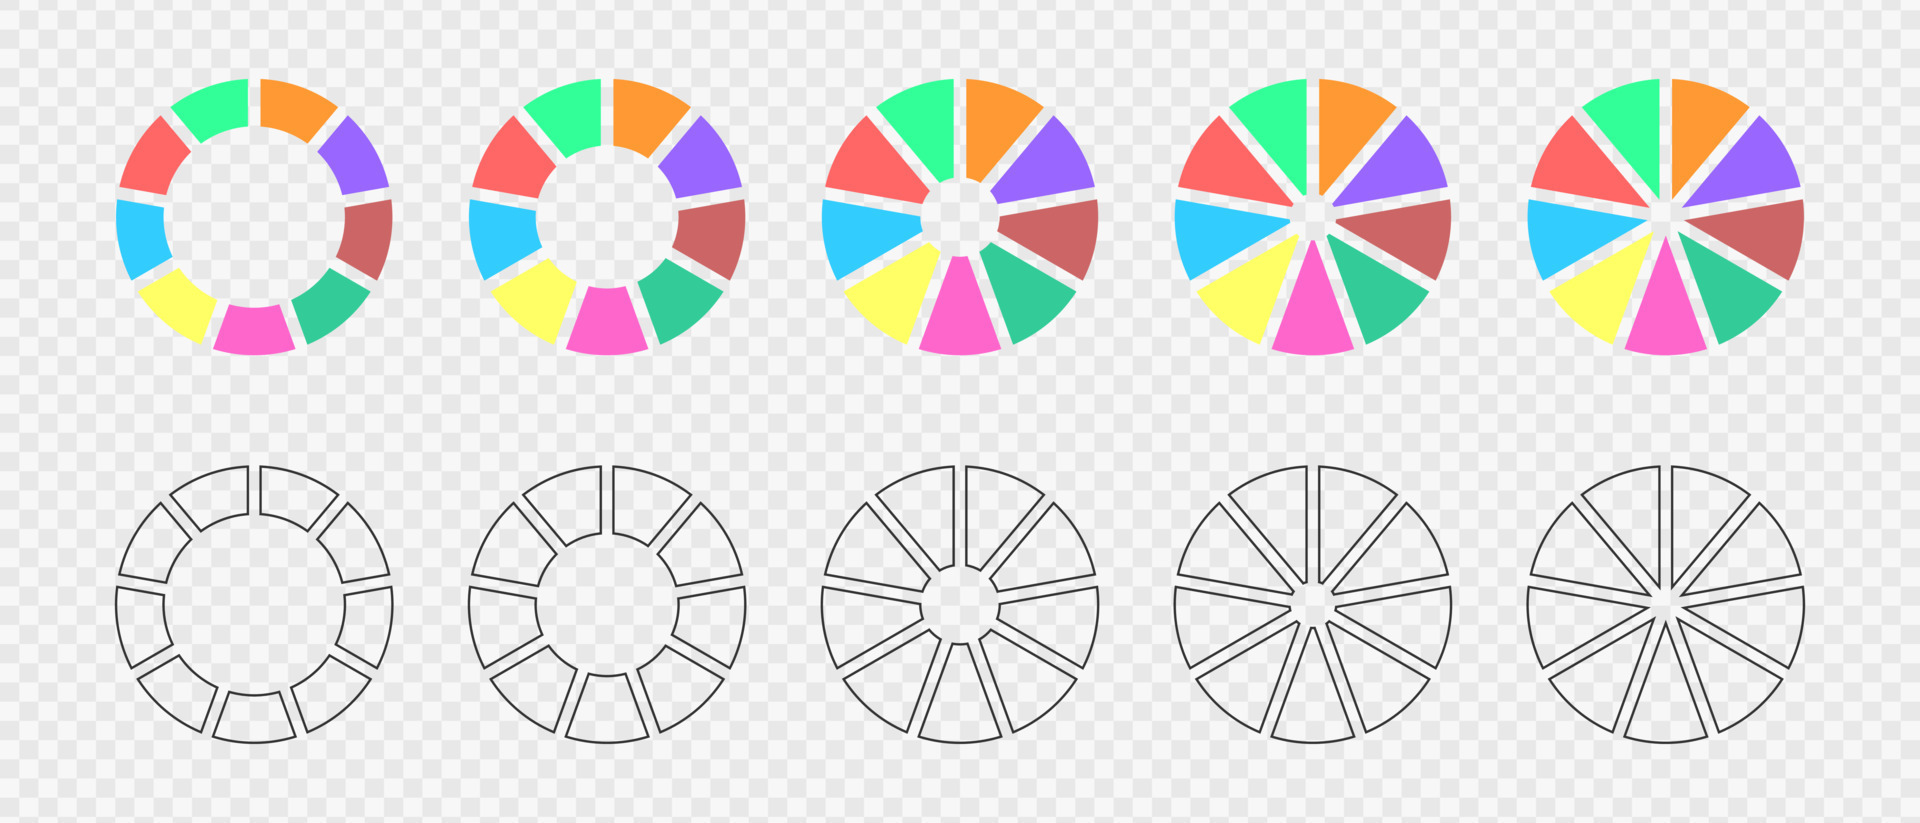 Como dividir un circulo en 12 partes iguales